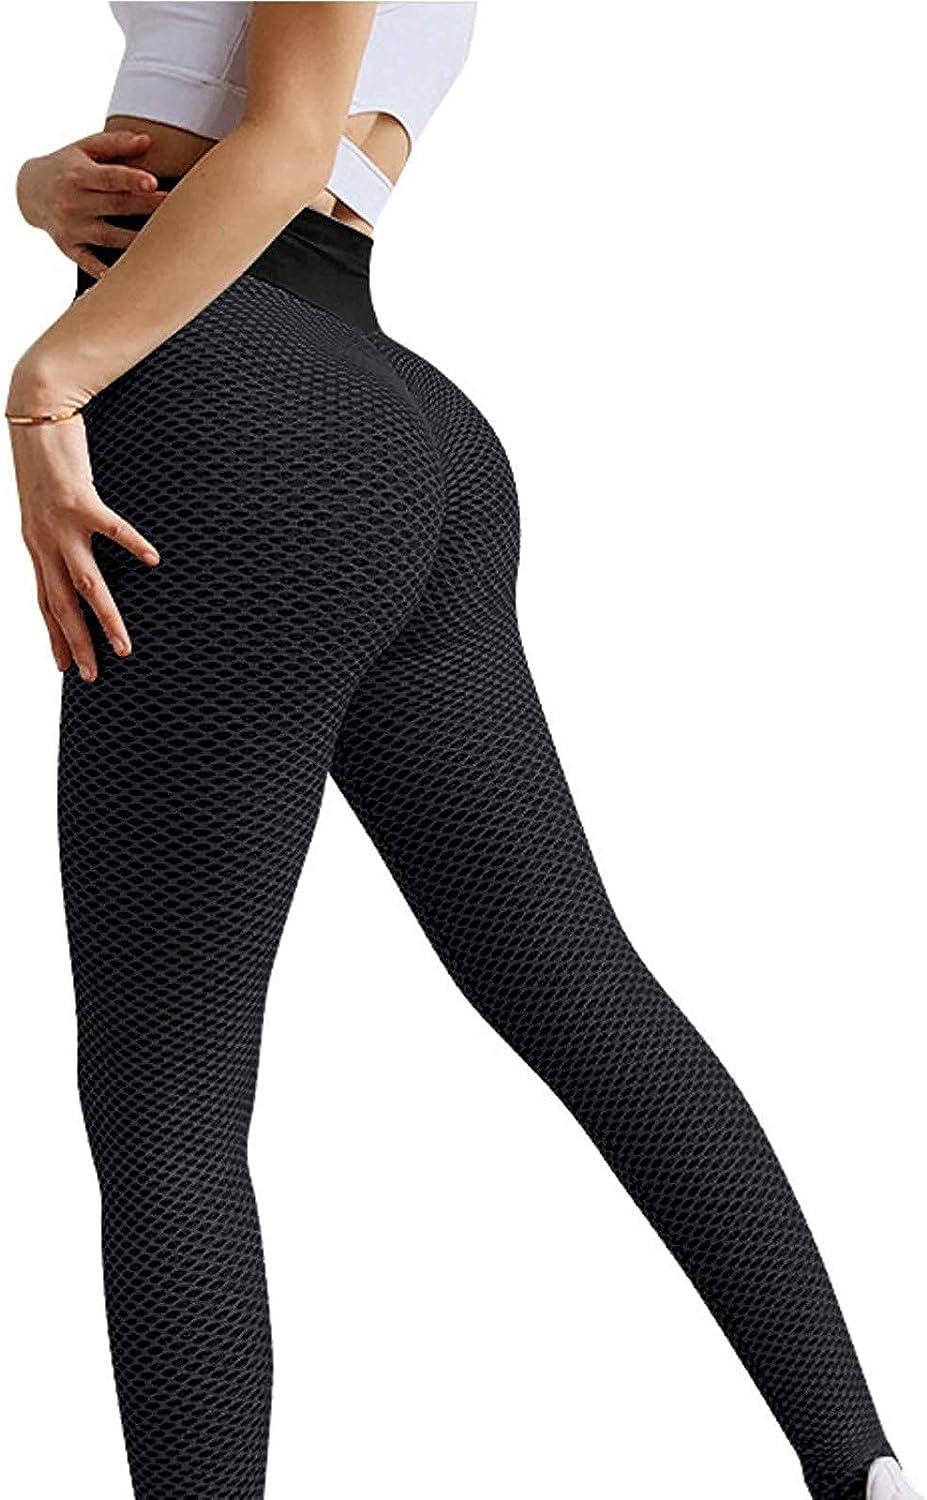 2021 High Waist Tight Fitting Stretch Hip Lifting Yoga Pants Women